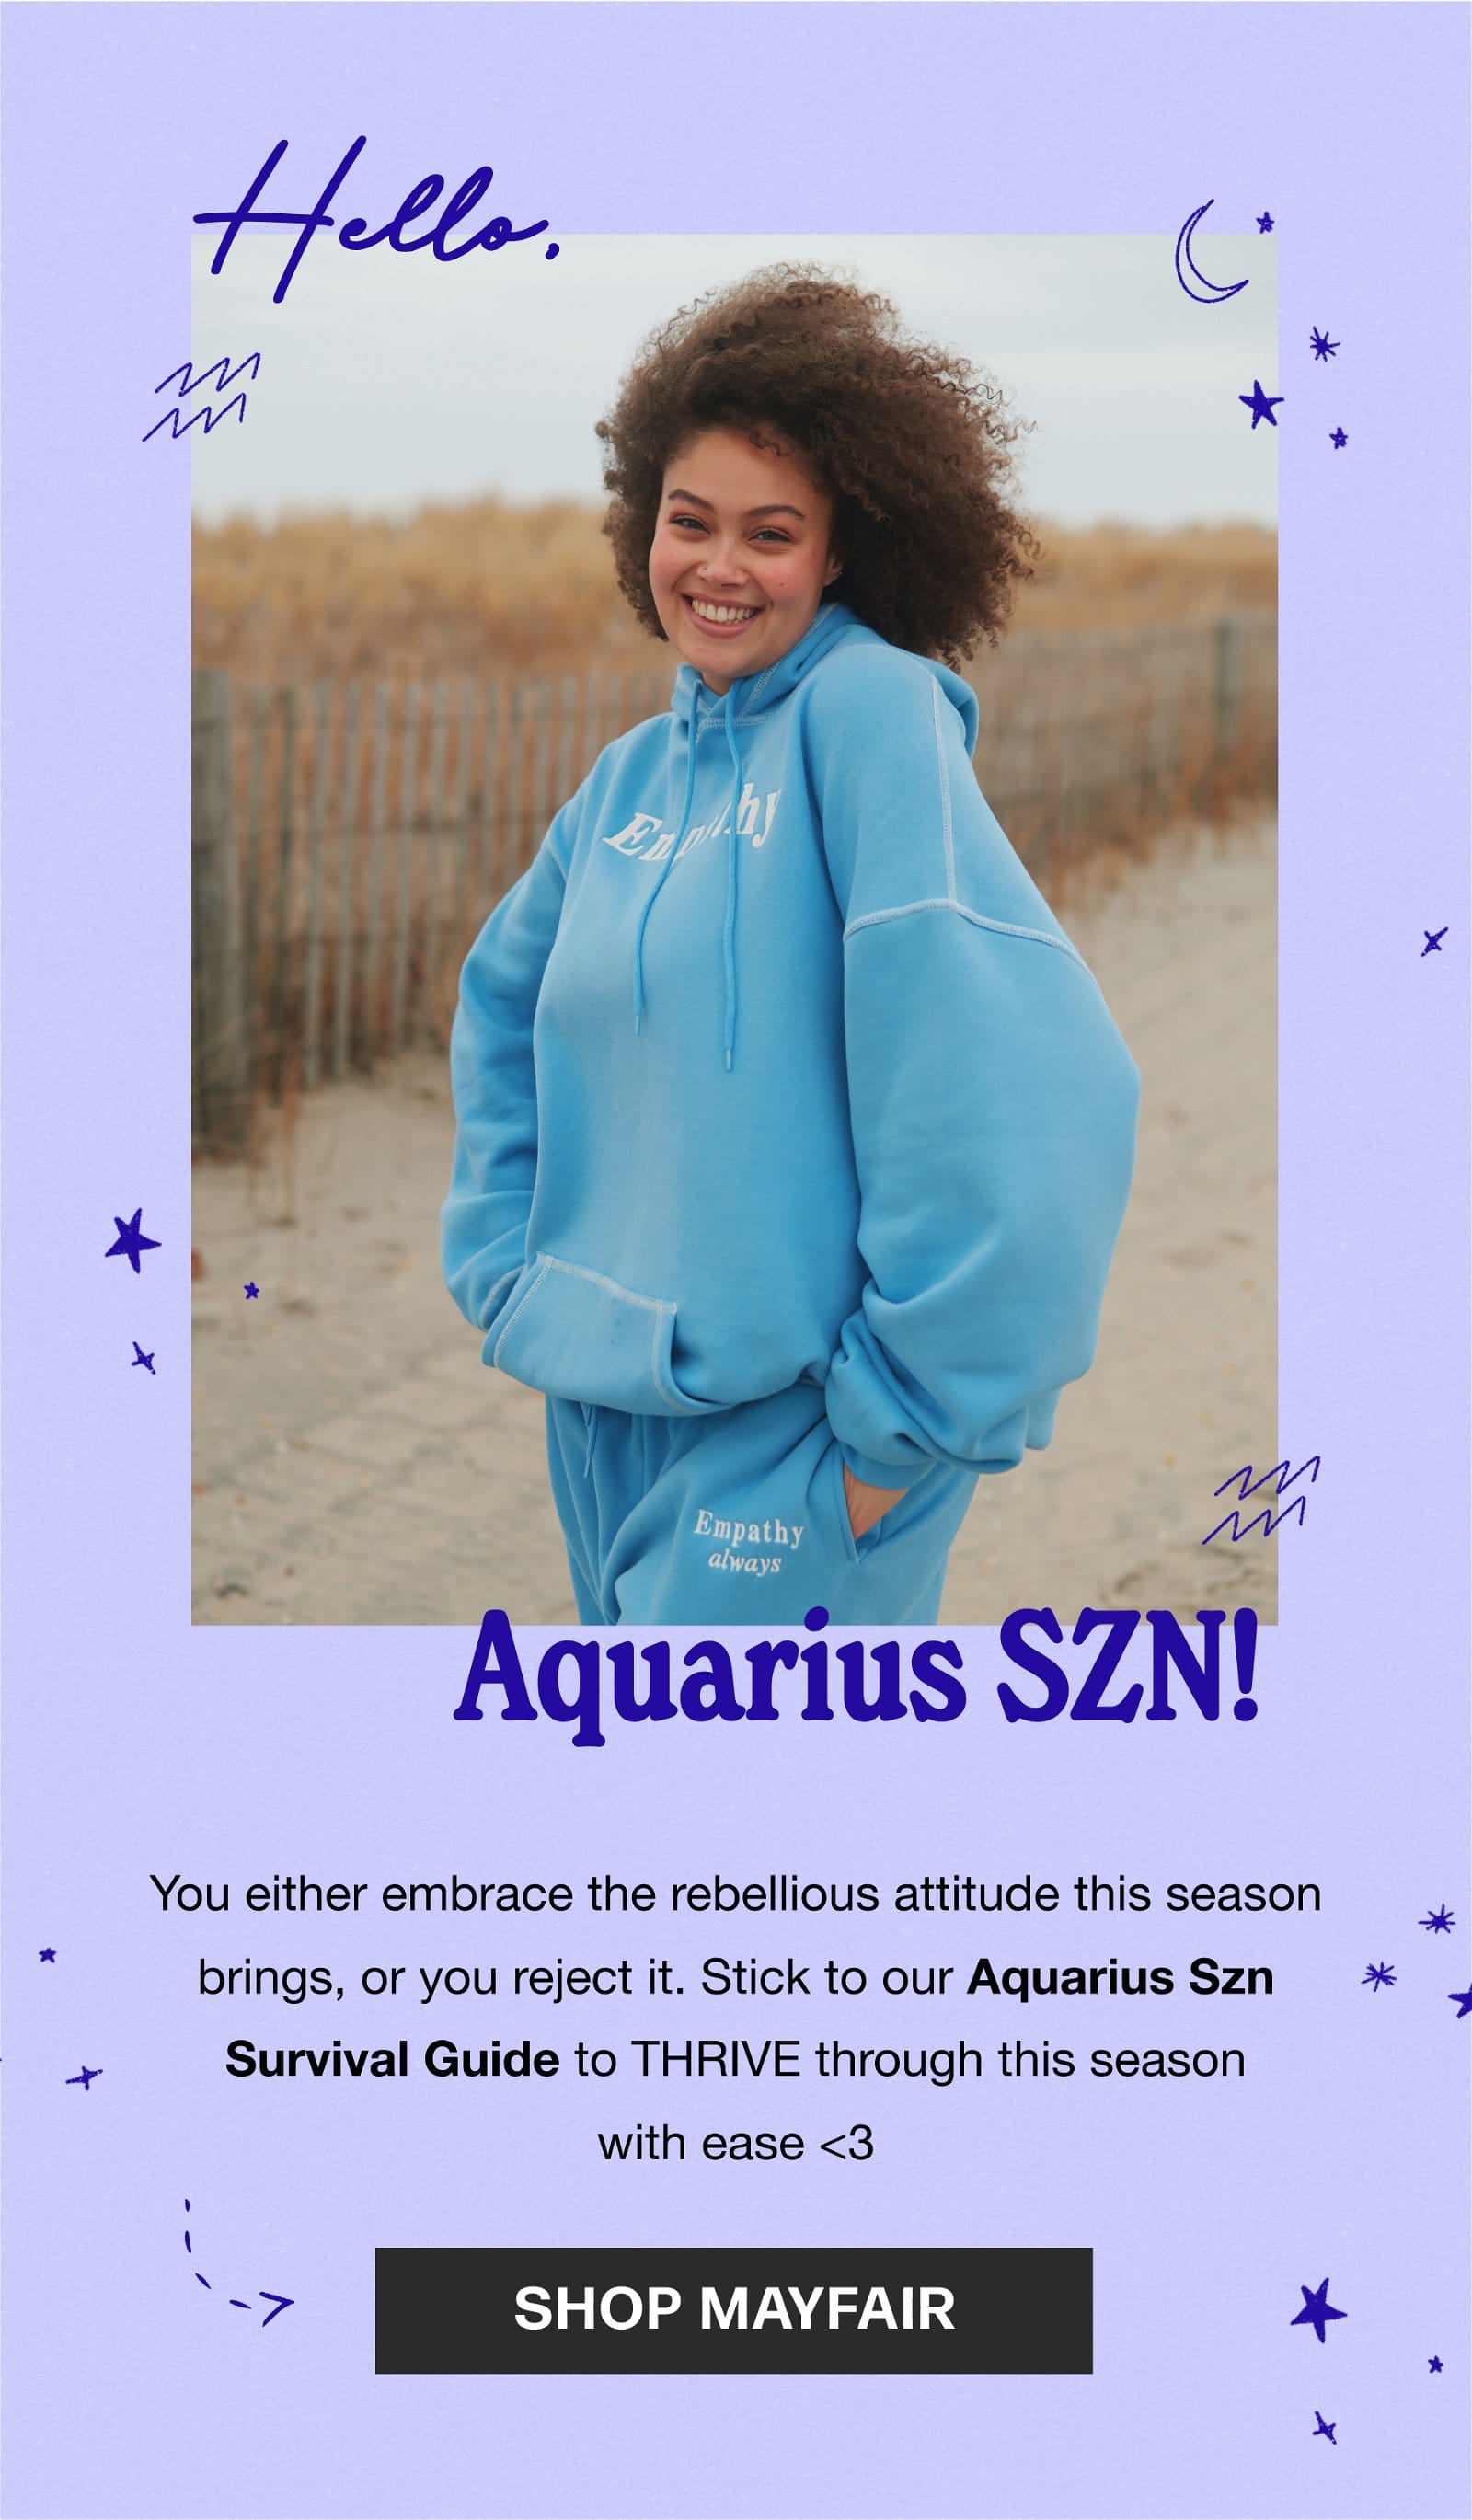 Aquarius SZN!